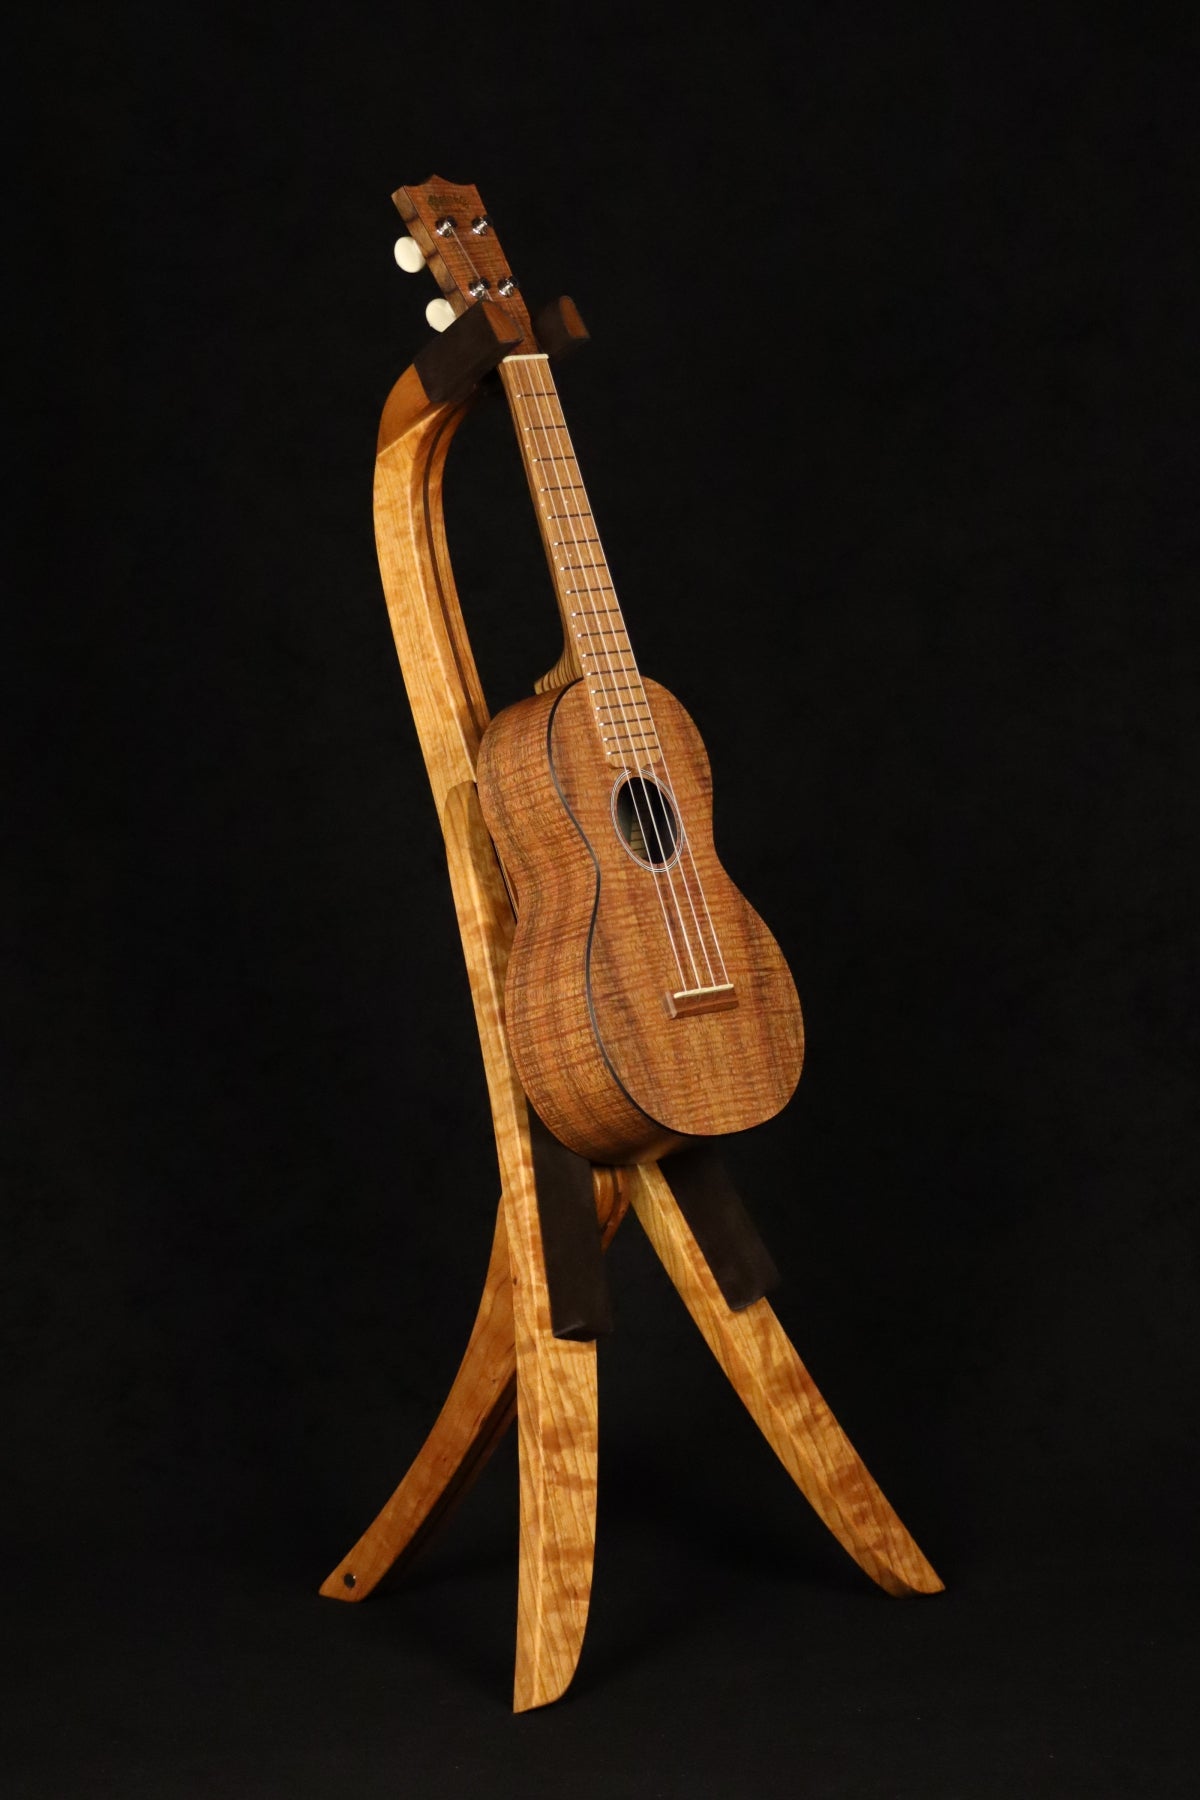 Folding cherry and walnut wood ukulele floor stand full front image with Martin ukulele